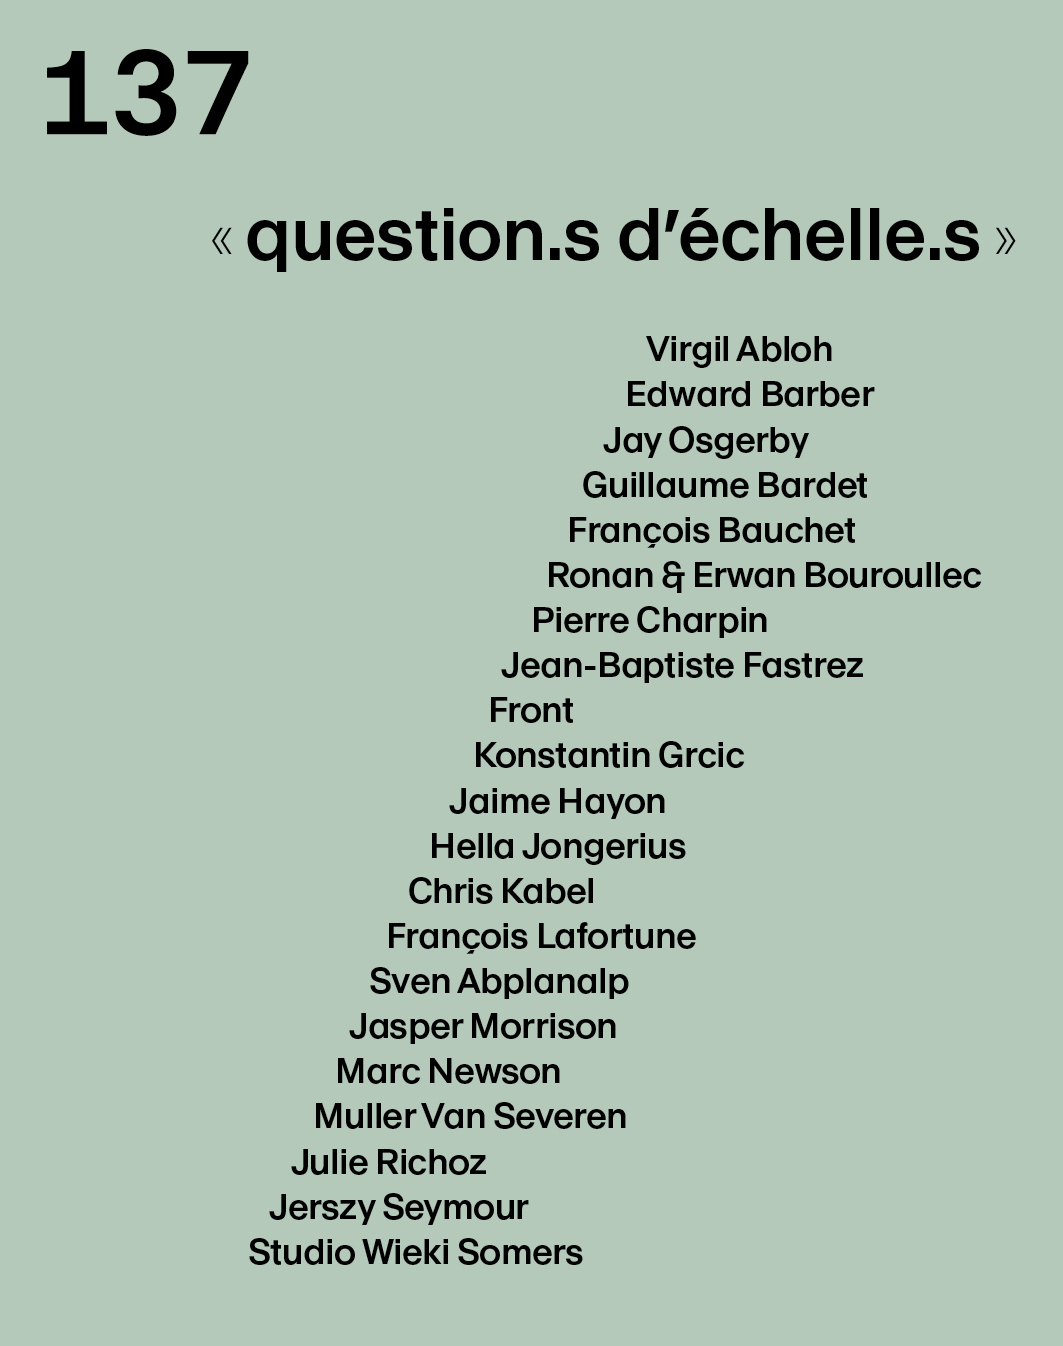 Guillaume Bardet - question.s d'échelle.s